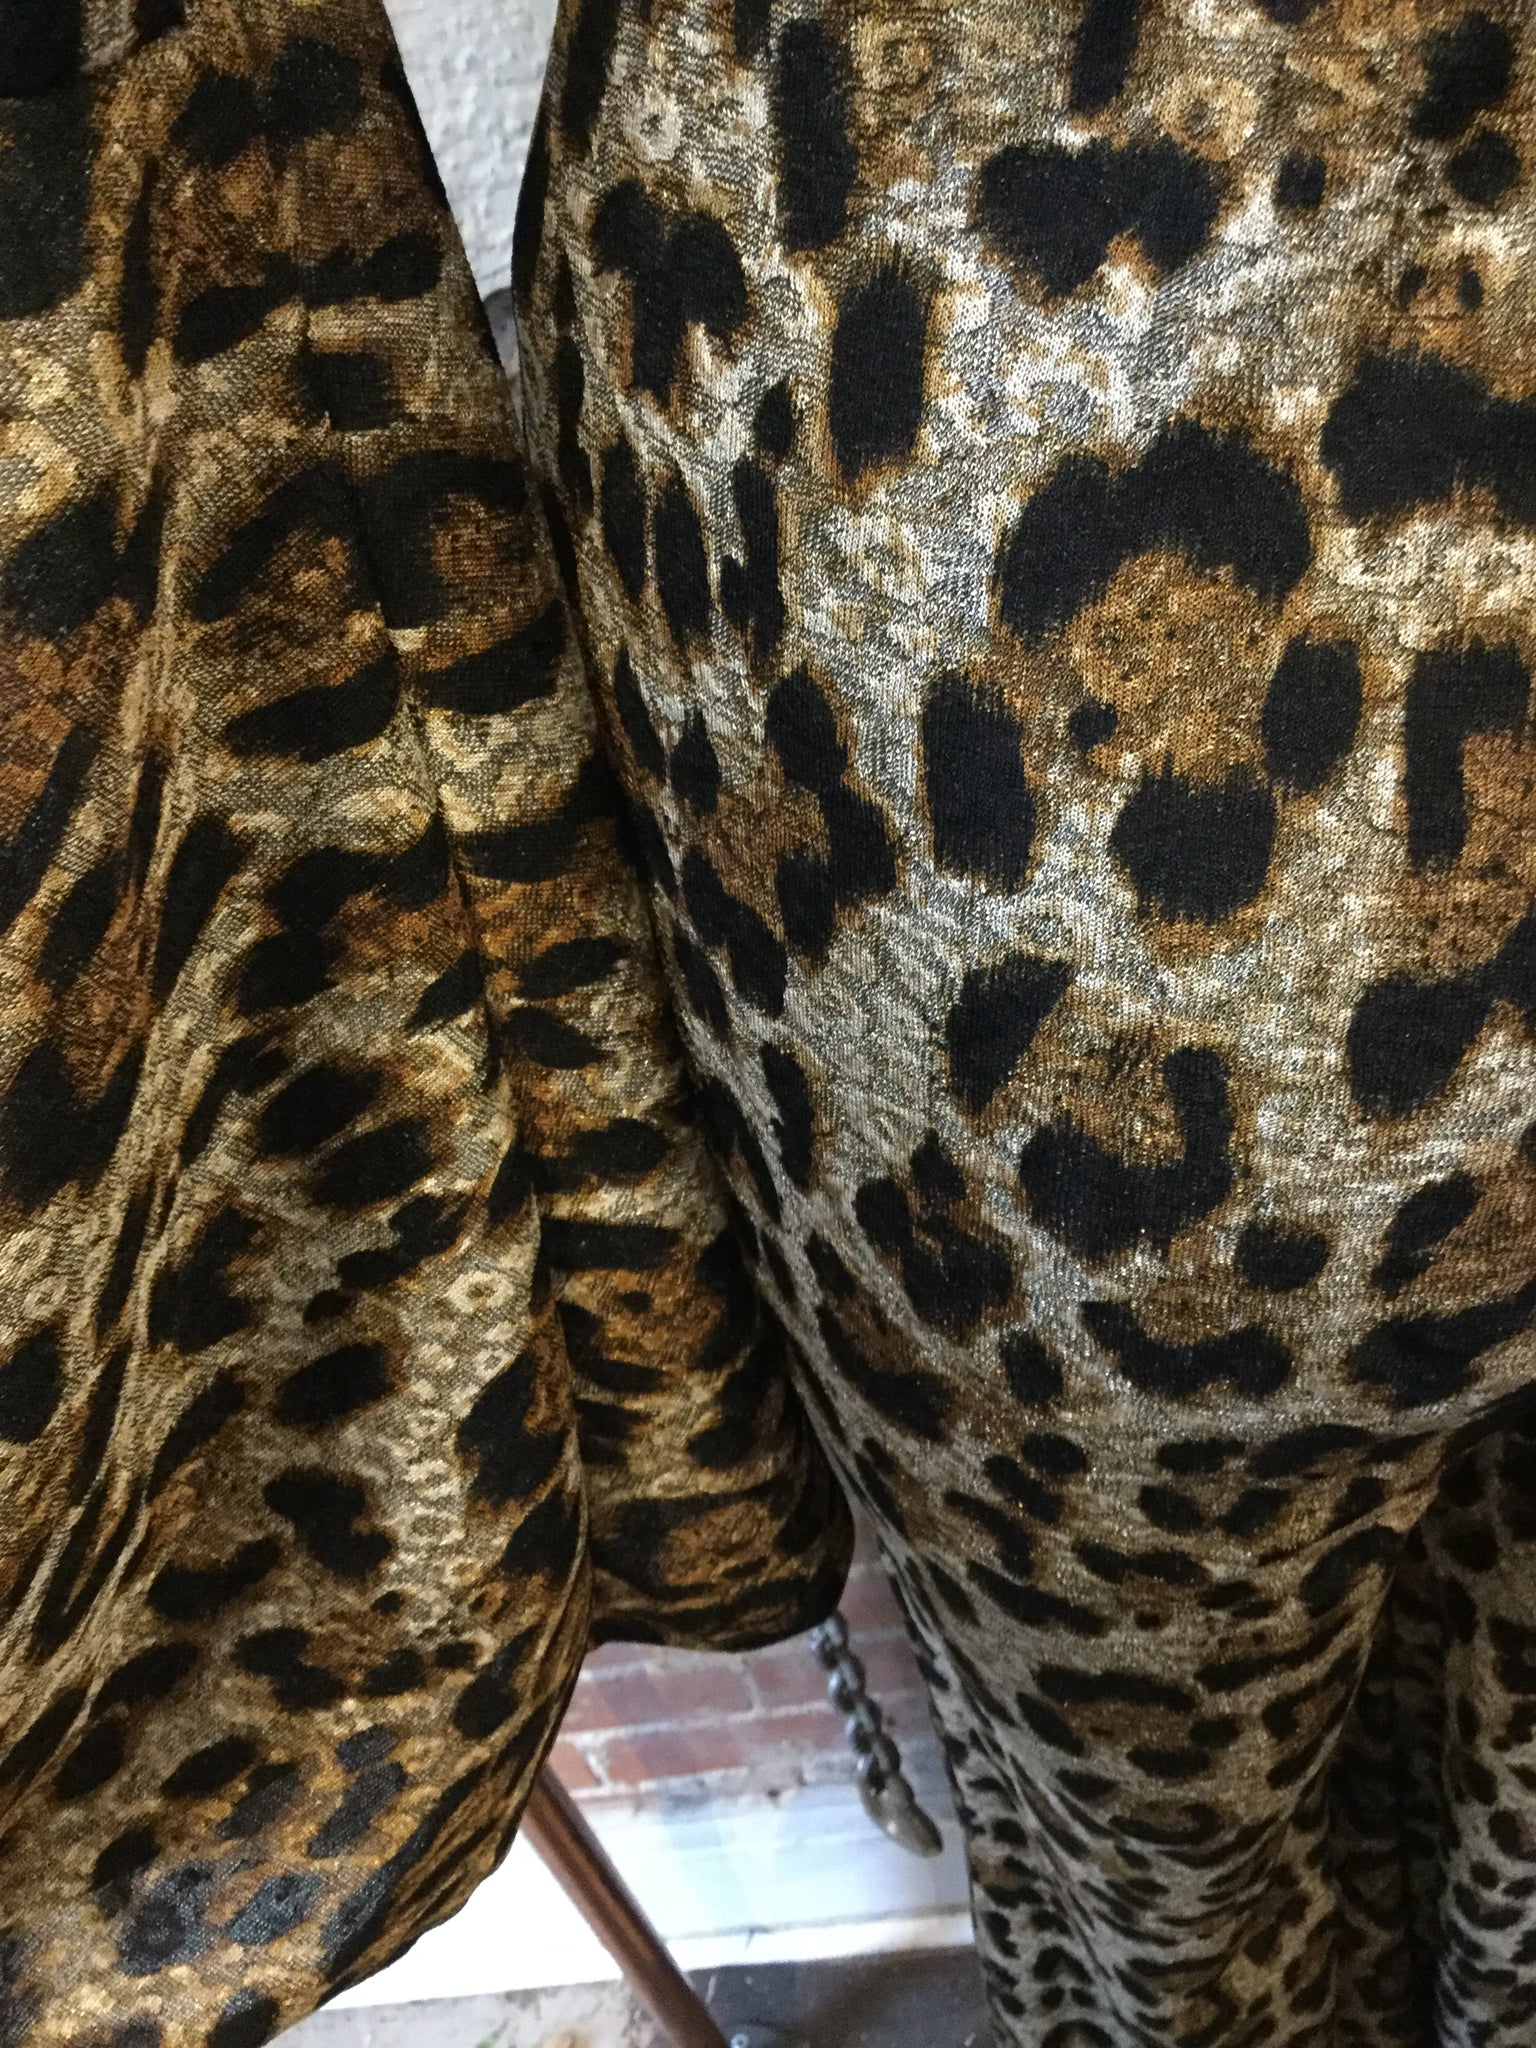 Stevie Leopard Pantsuit SALE!